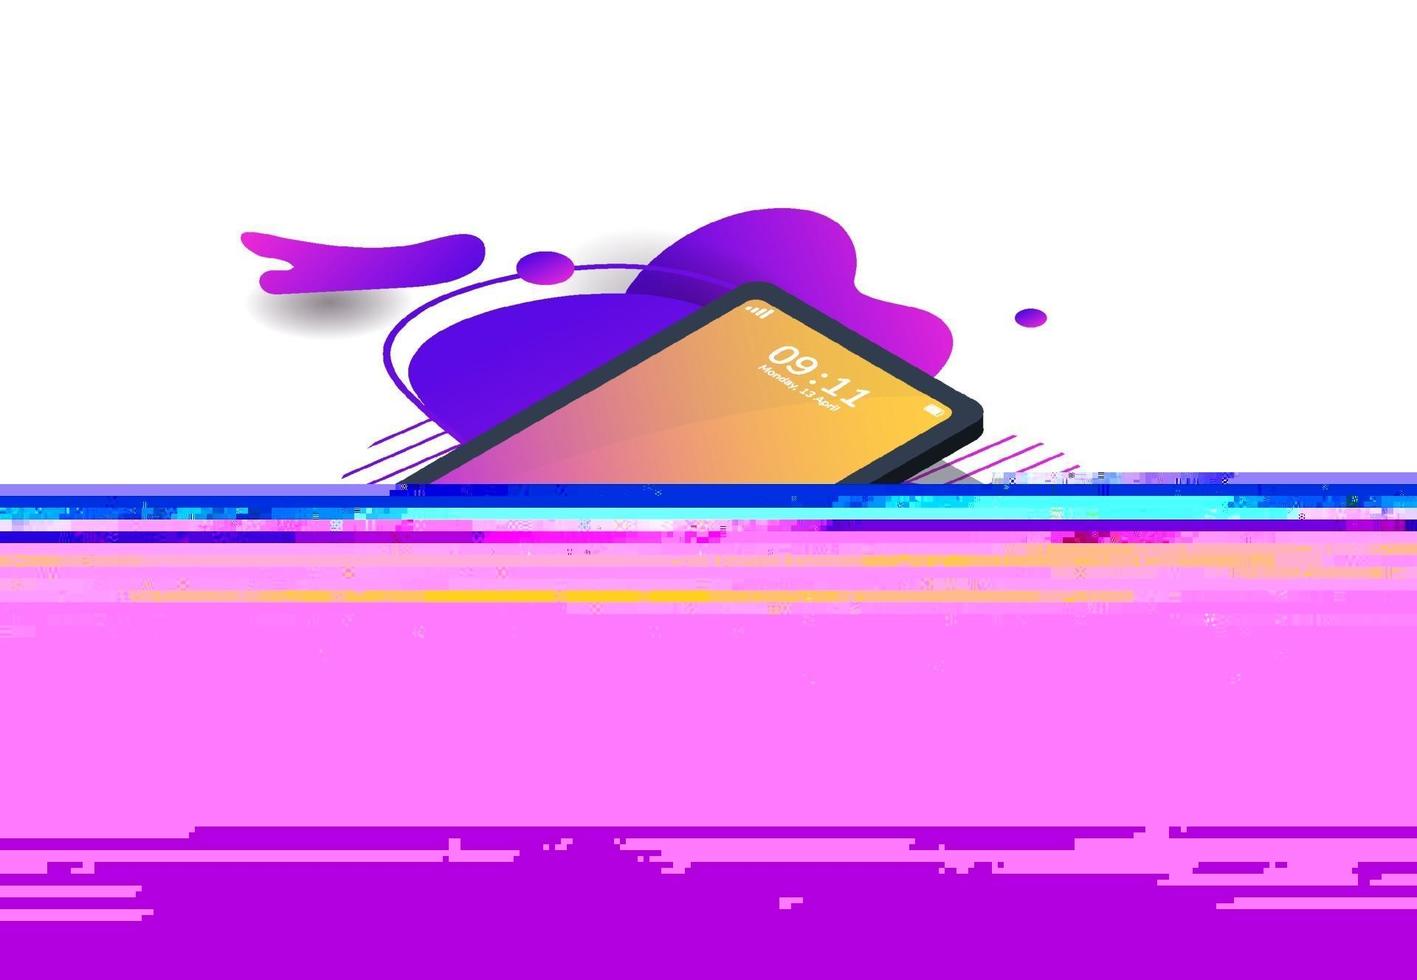 moderno telefono mockup isometrico con estate a colori sfumati per poster, infografiche, asset di gioco, copertina. illustratio di vettore